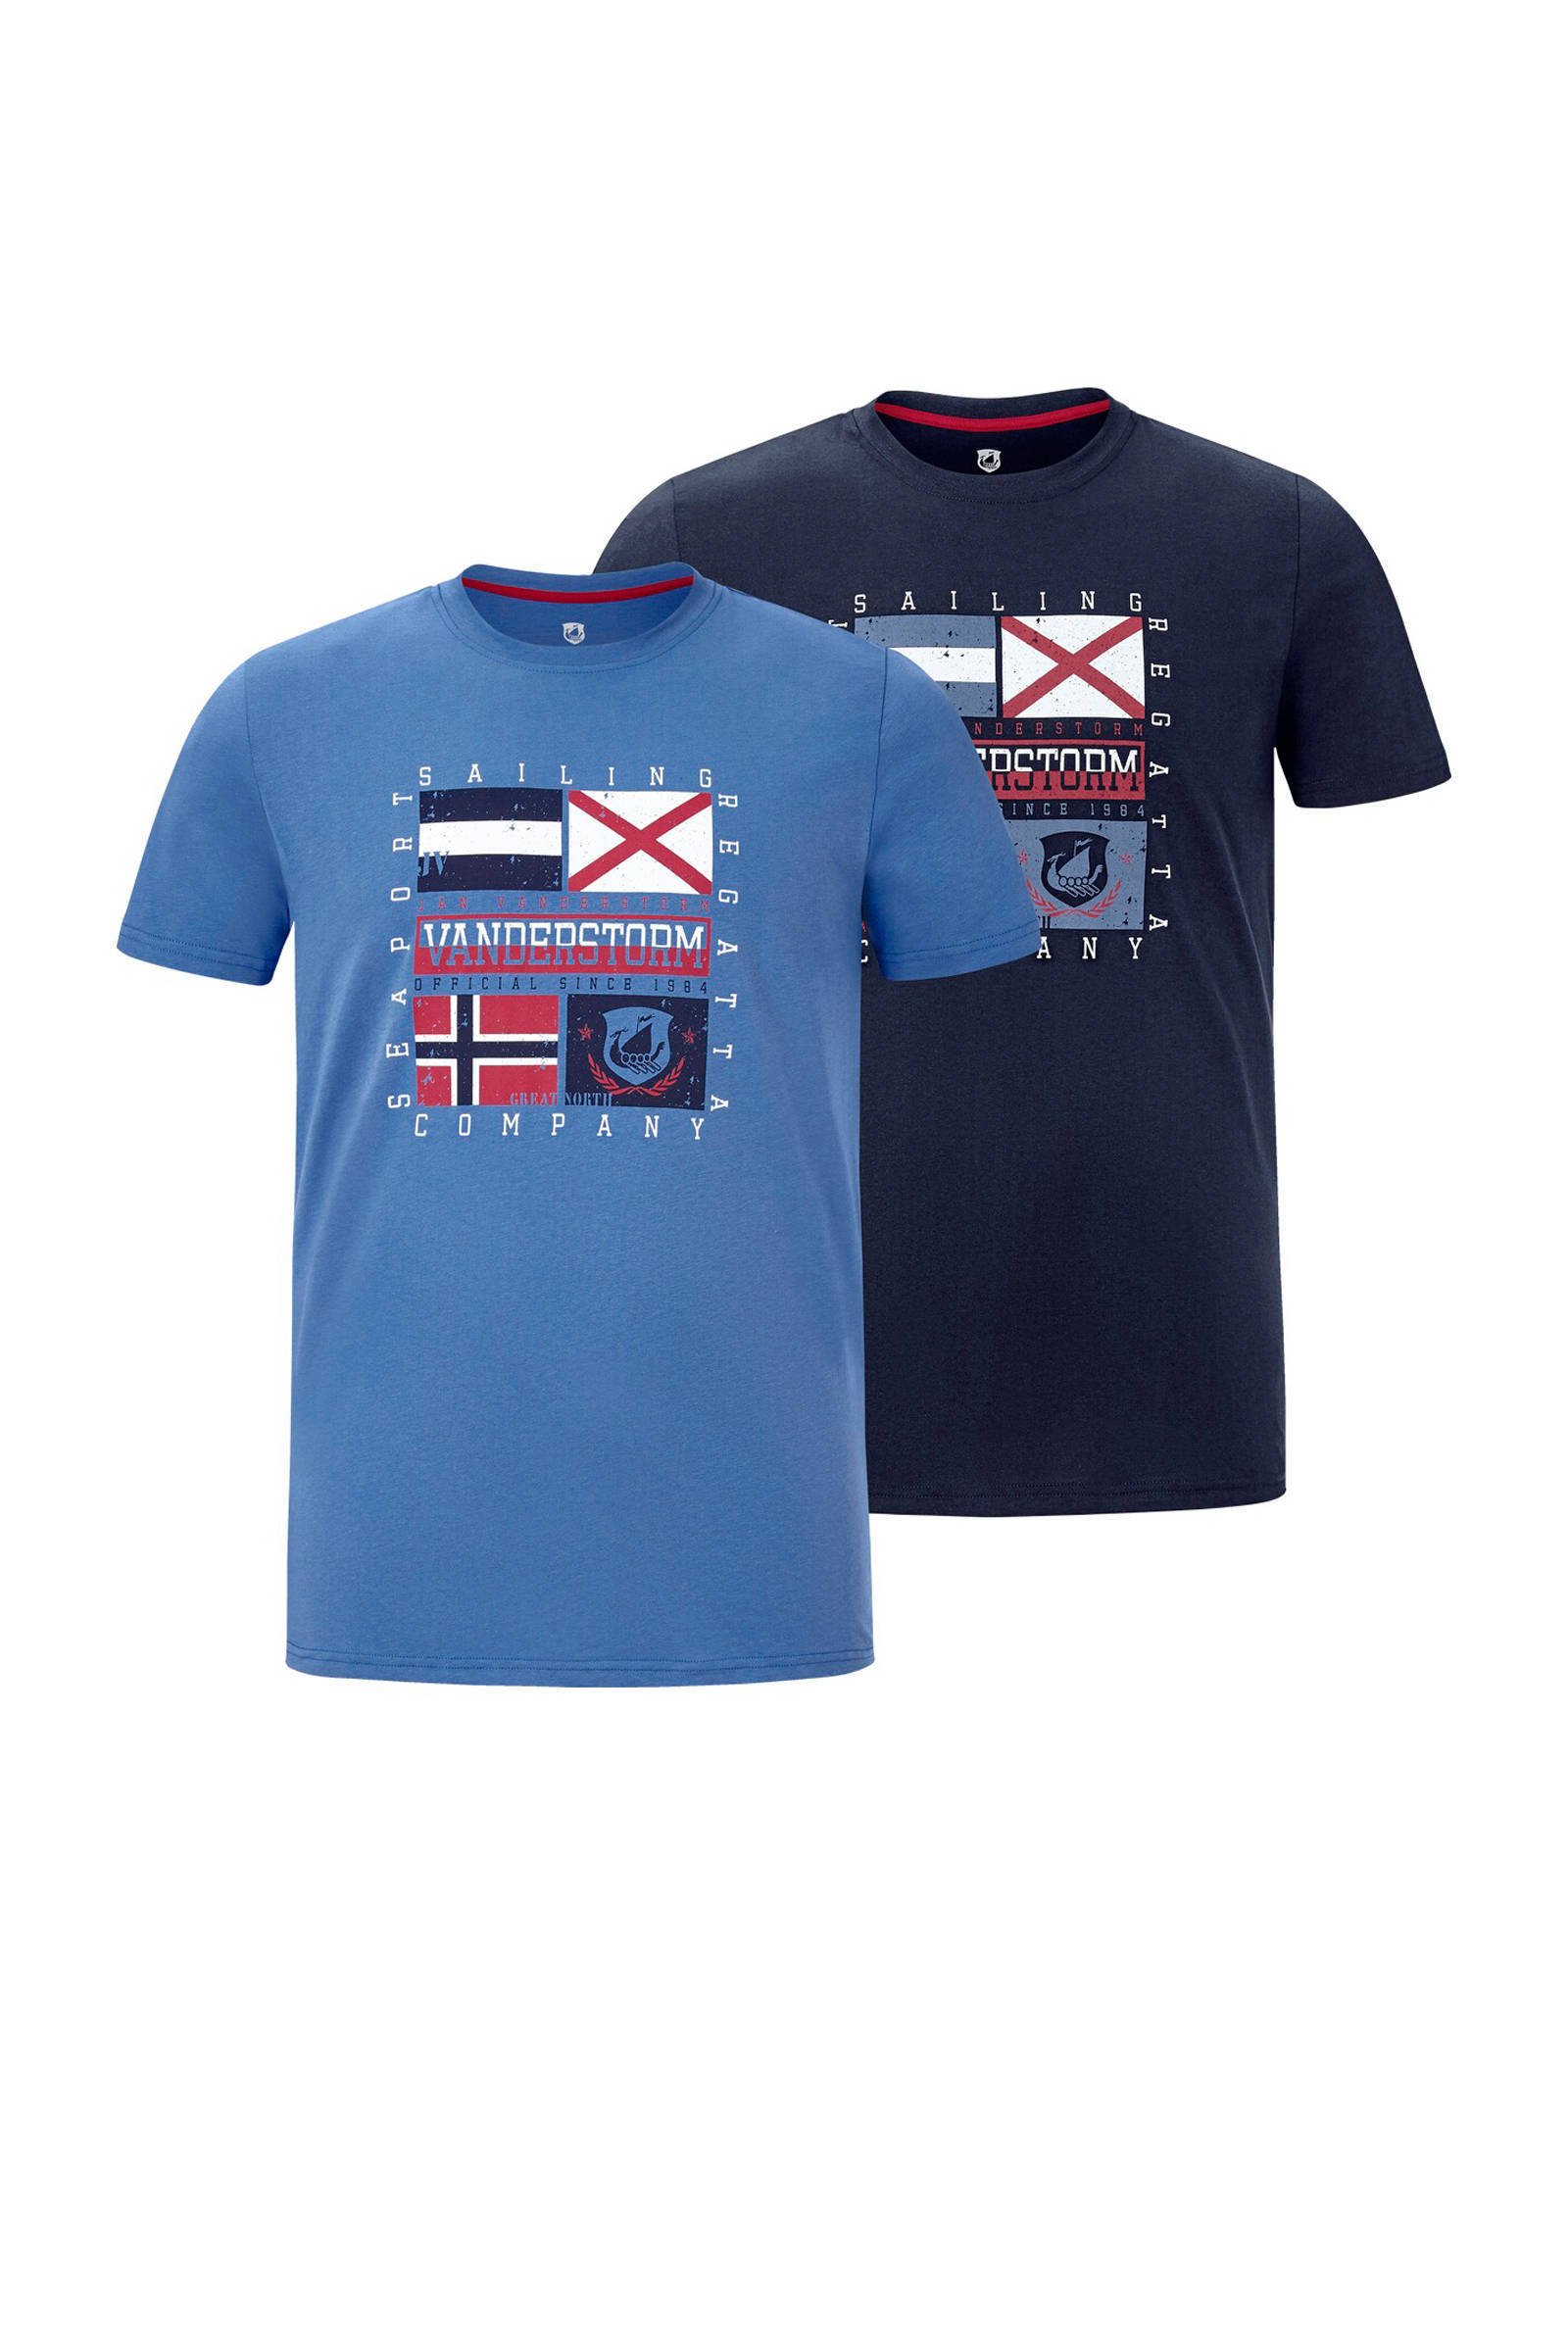 Jan Vanderstorm T shirt PREBEN in 2 kleuren, comfort fit(Set van 2 ) online kopen